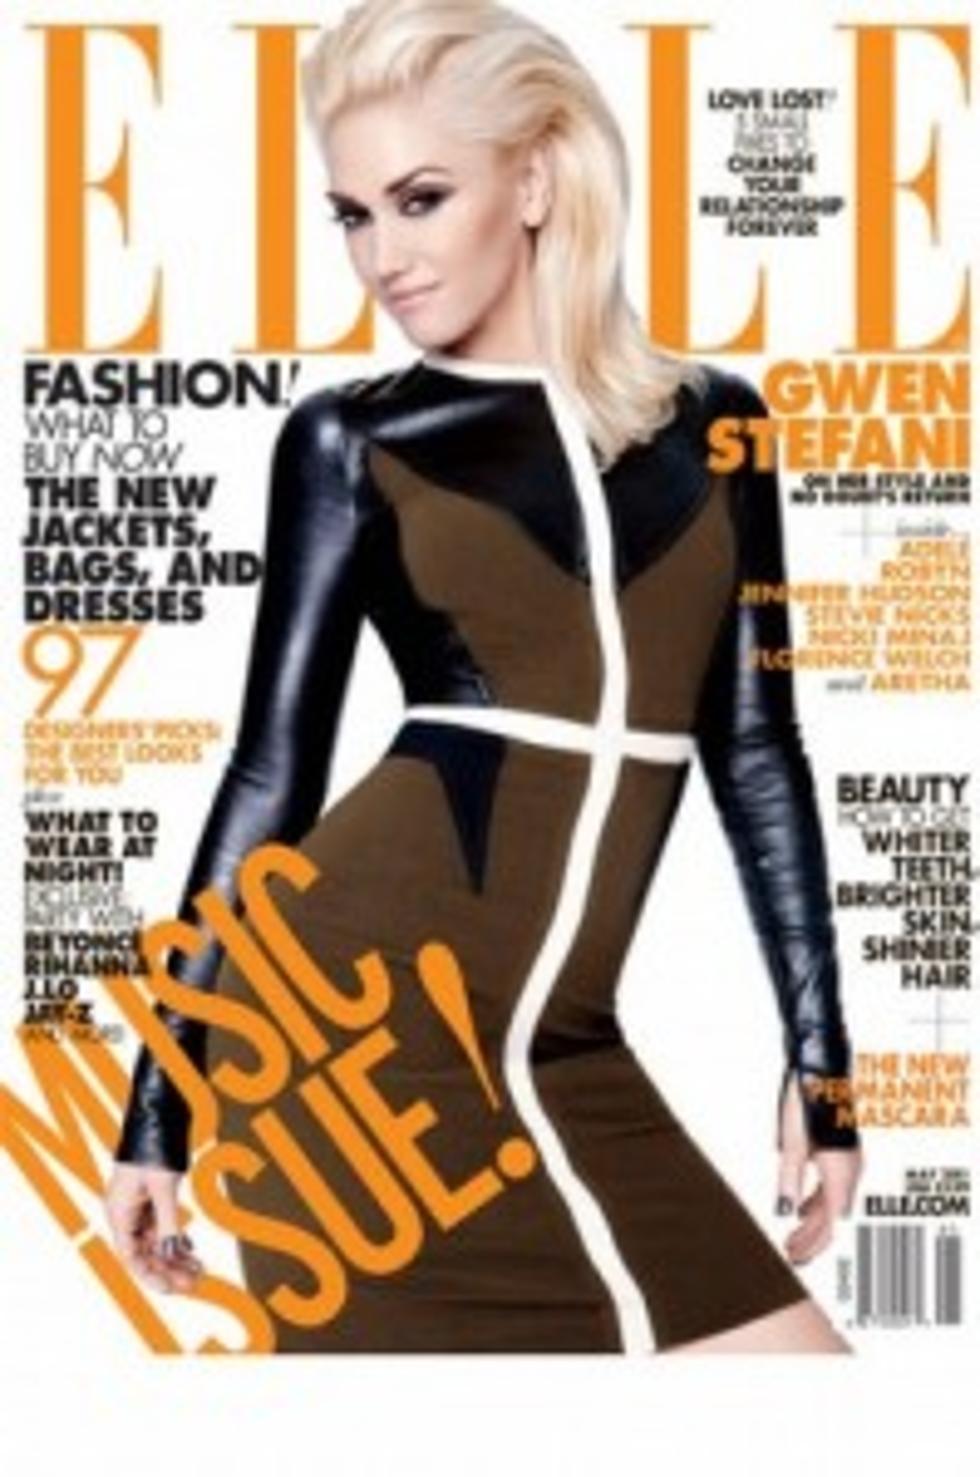 Elle Magazine features Gwen Stefani